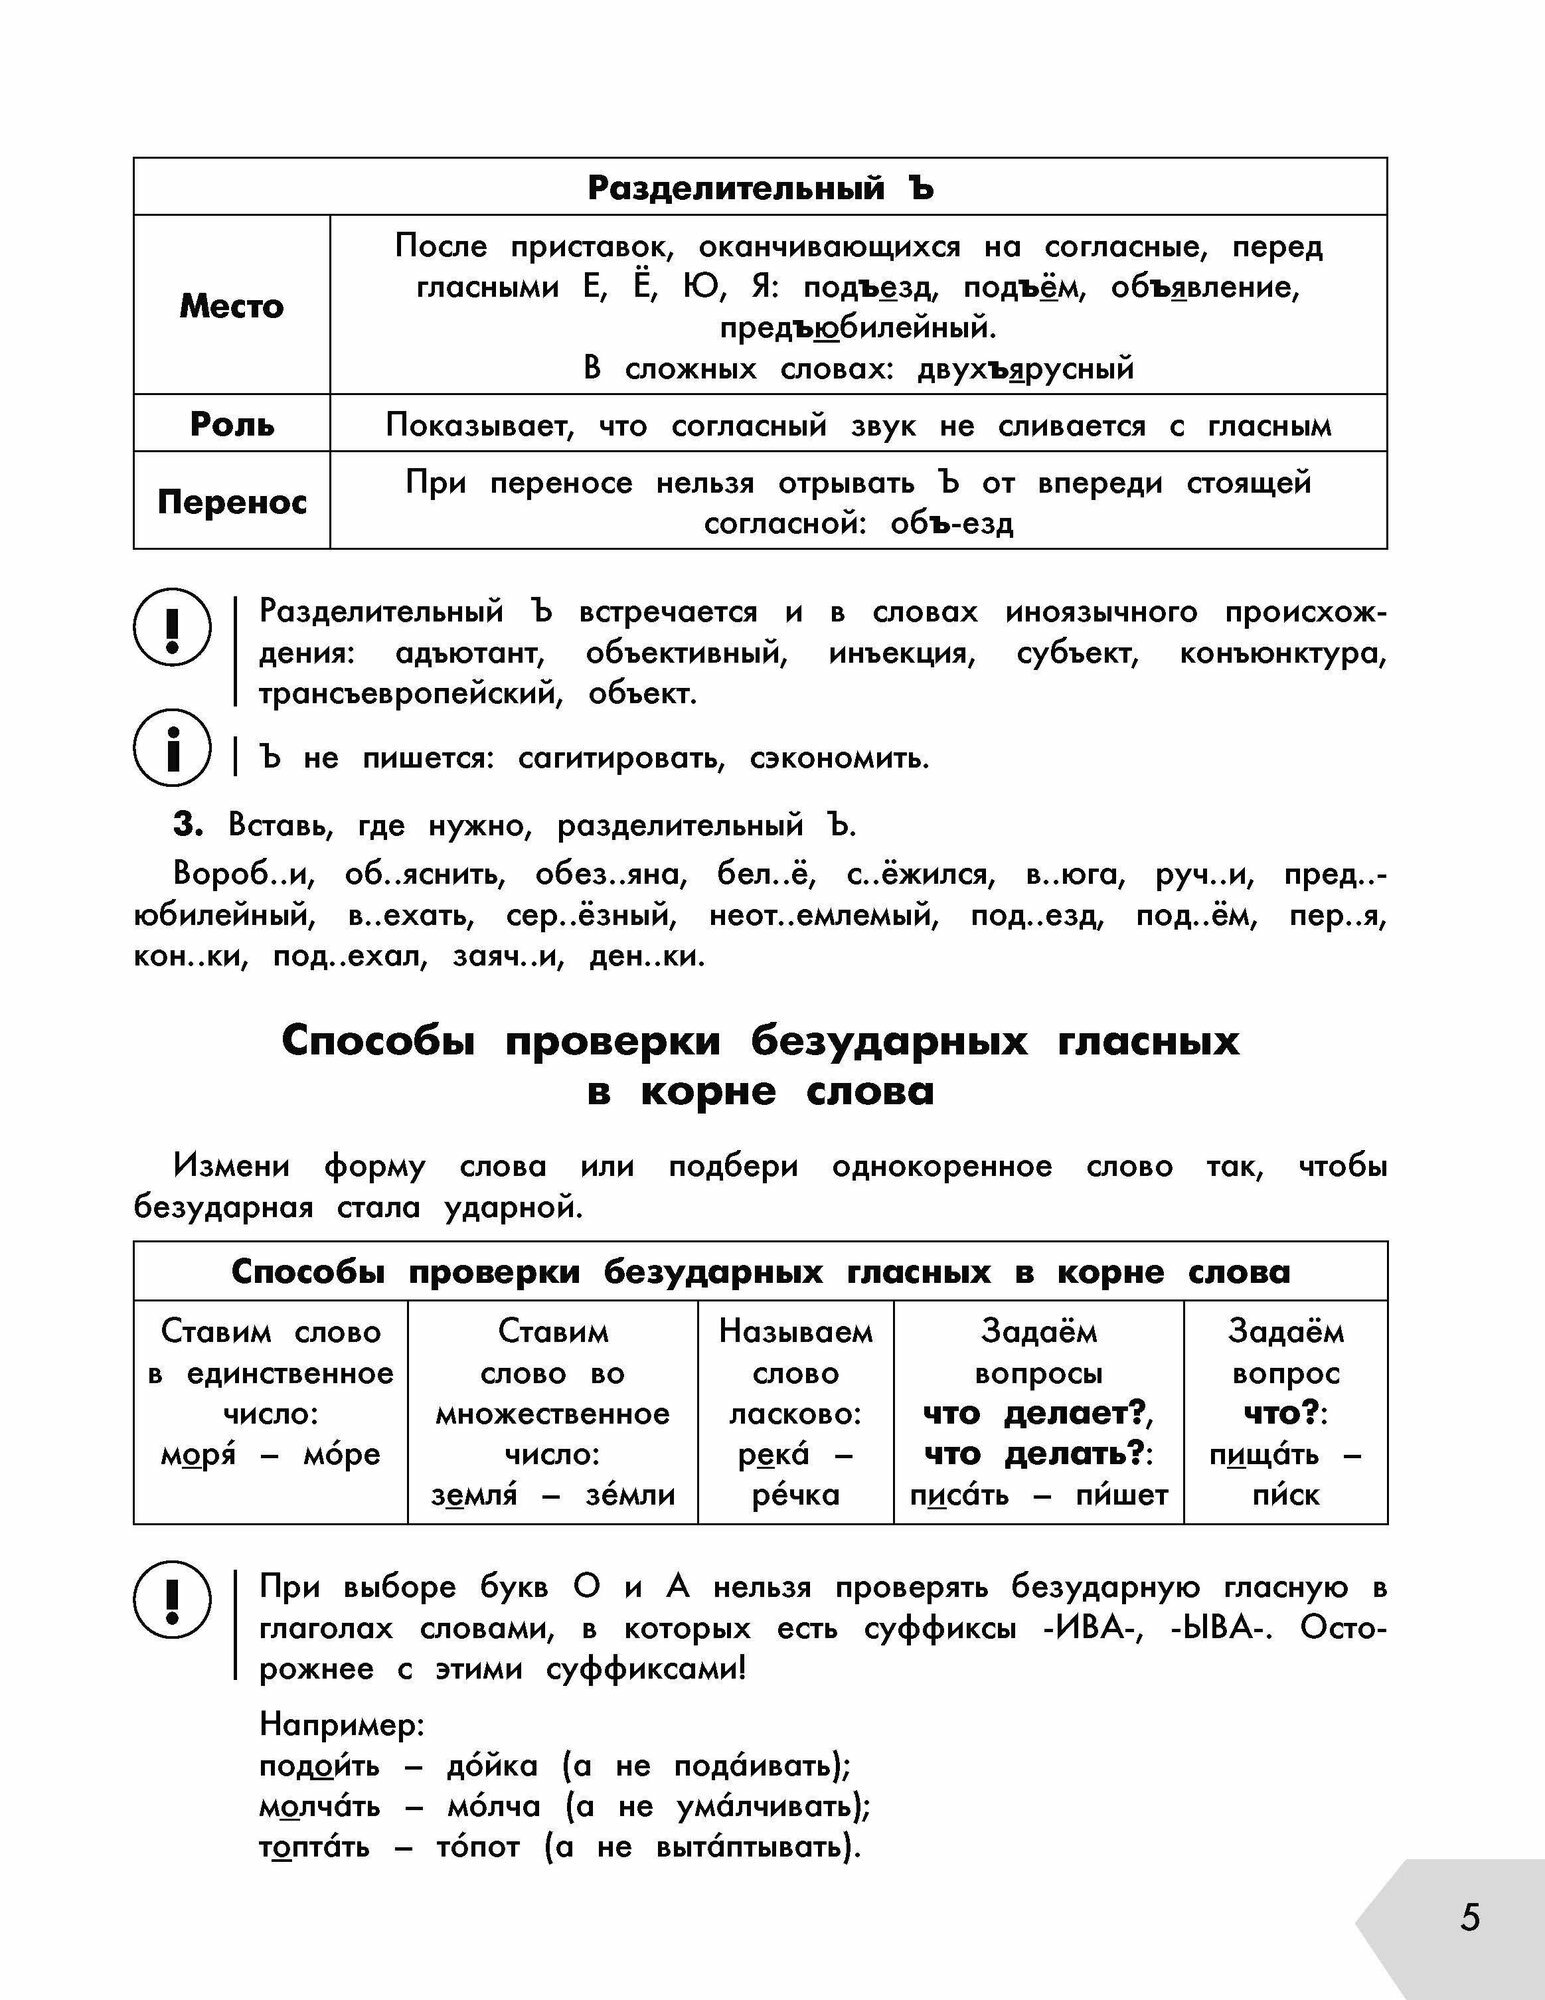 Русский язык в схемах и таблицах. Все темы школьного курса 4 класса с тестами. - фото №18